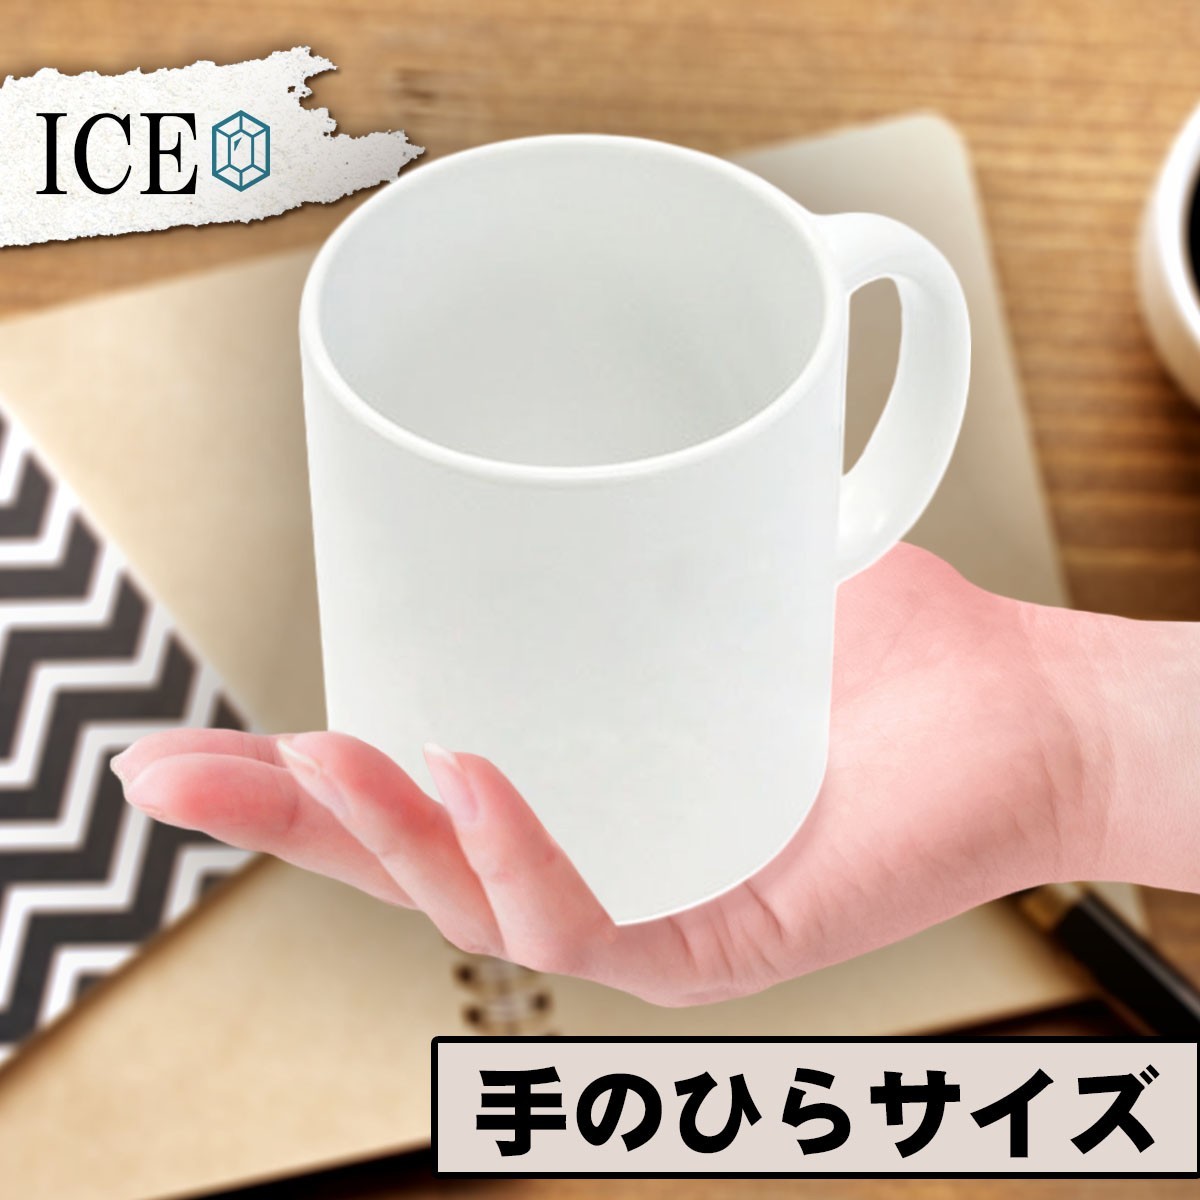 手を挙げる女性 おもしろ マグカップ コップ 陶器 可愛い かわいい 白 シンプル かわいい カッコイイ シュール 面白い ジョーク ゆるい プ_画像2